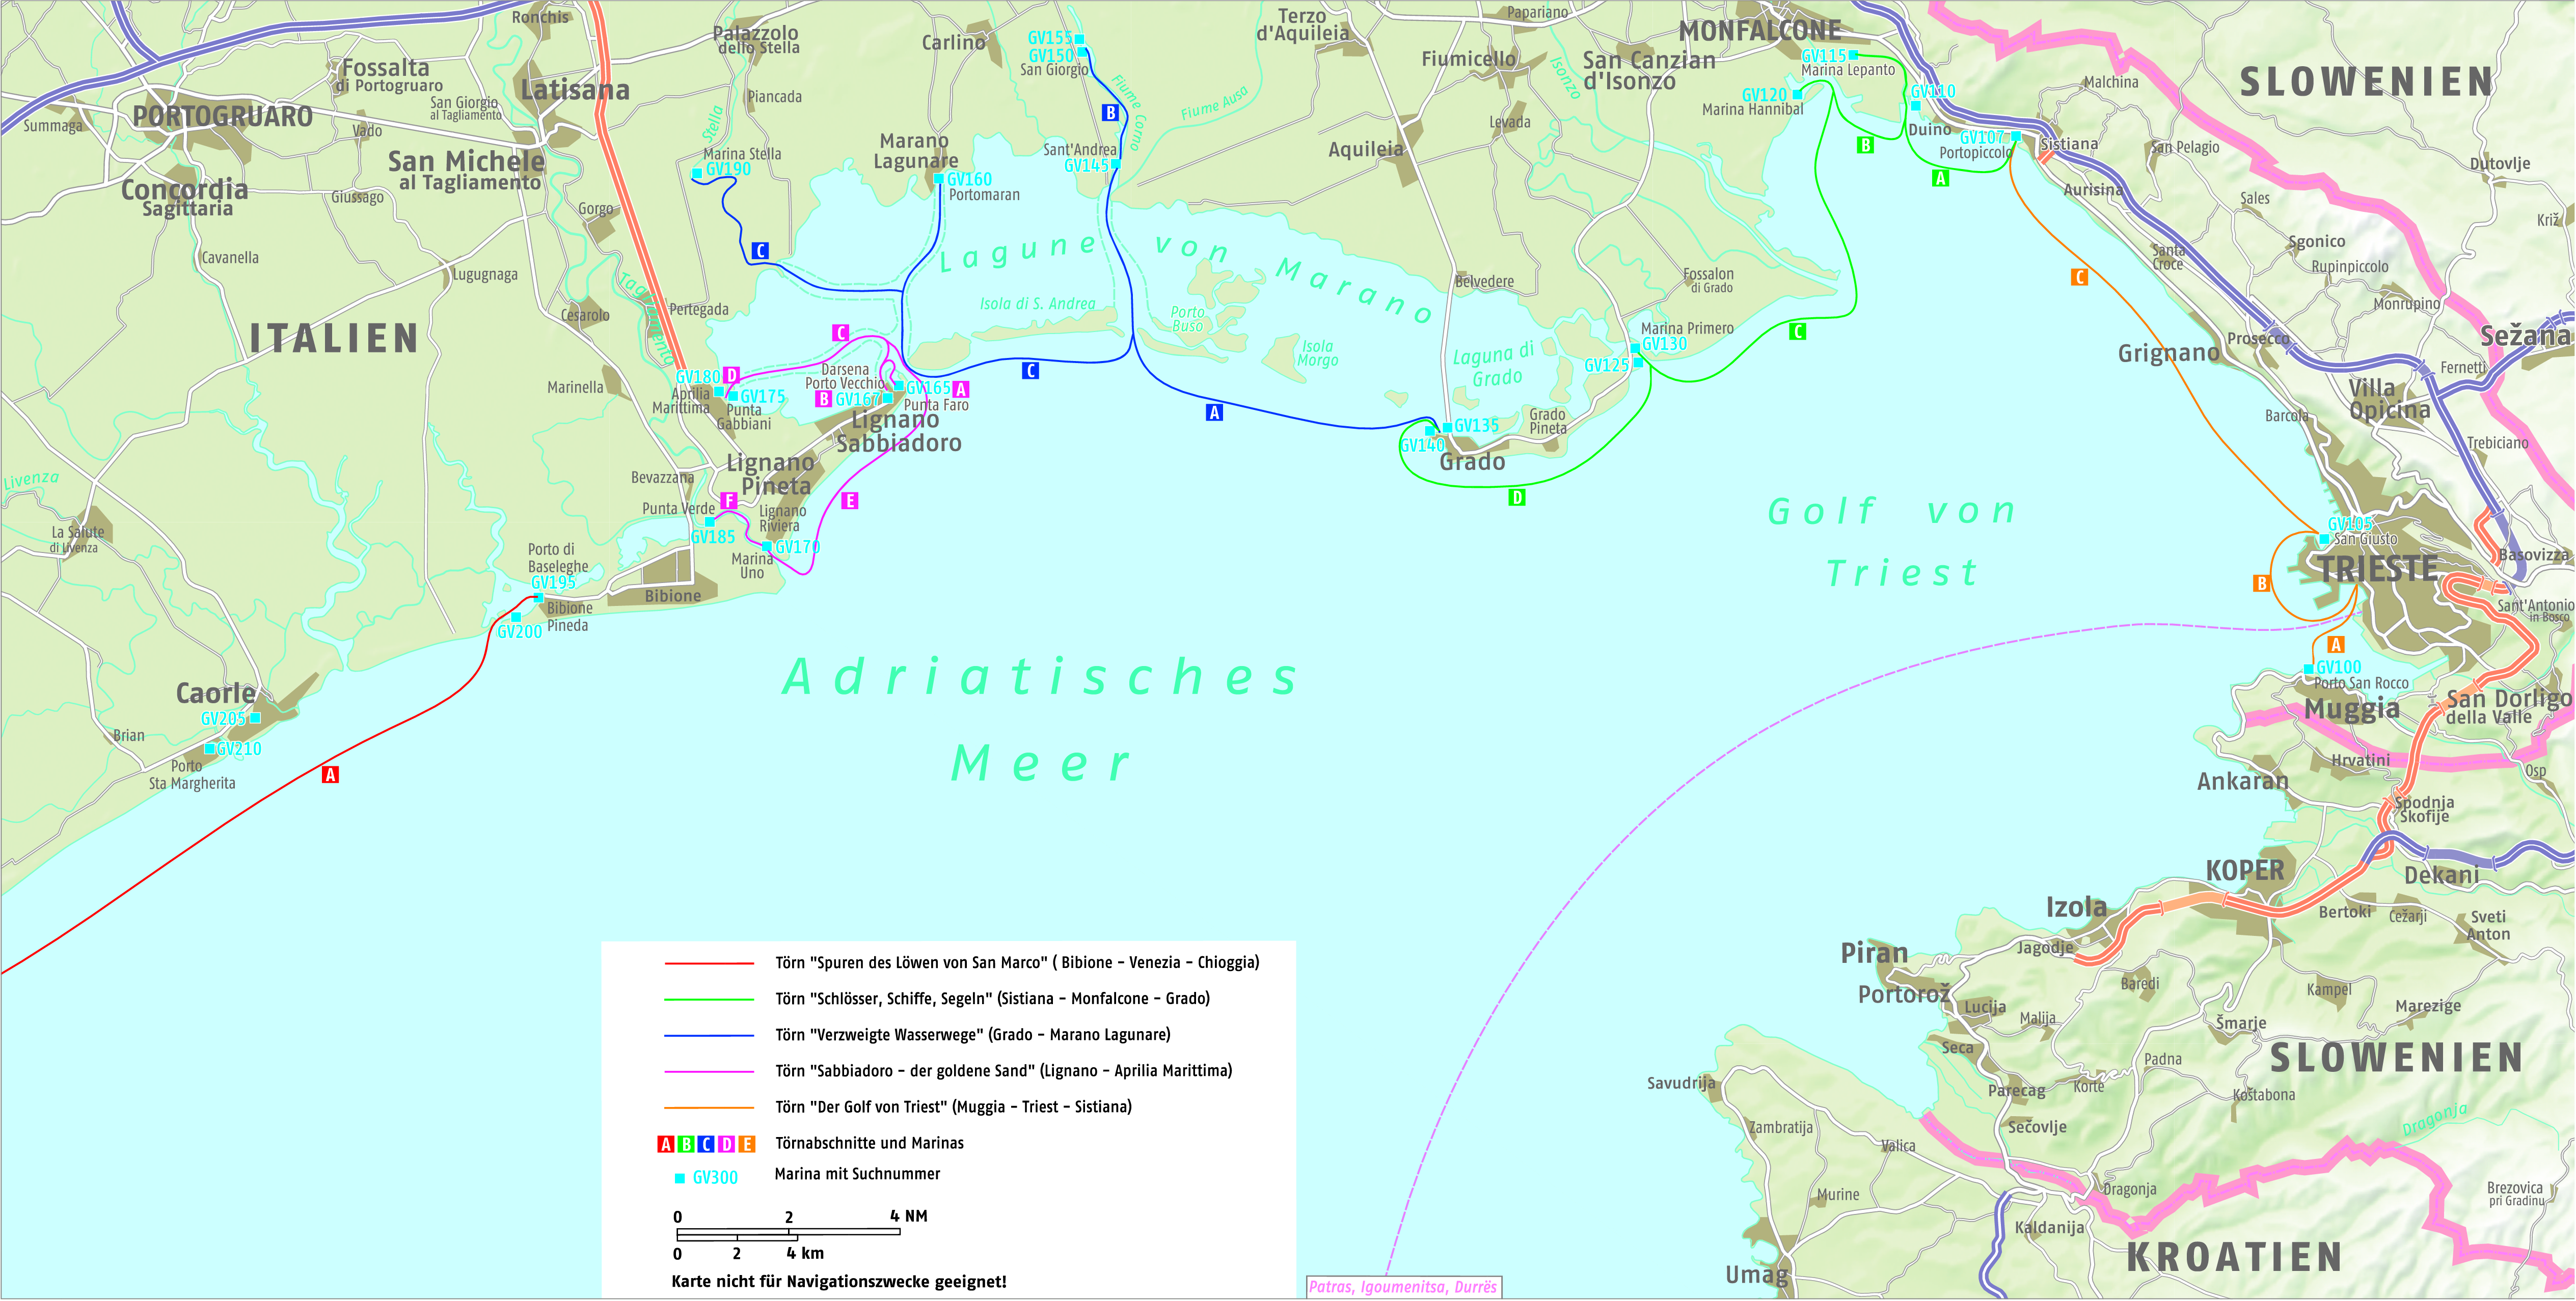 Törnplanung Golf von Venedig Ost